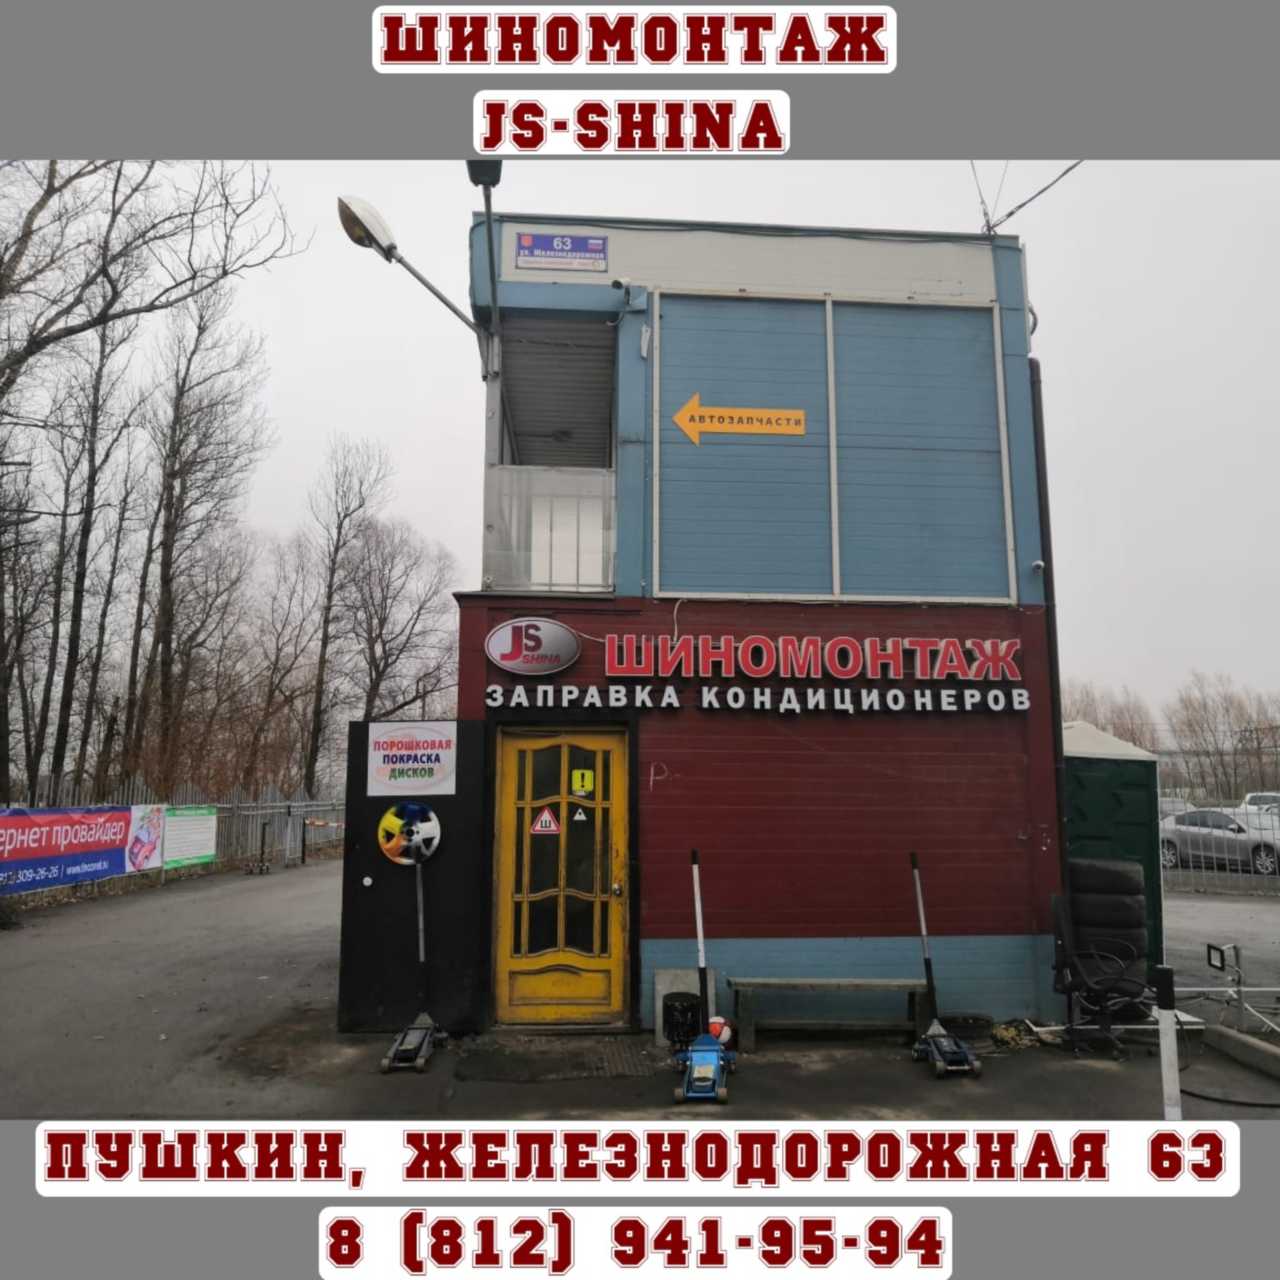 Шиномонтаж 24 часа в Пушкине, ул. Железнодорожная, д. 63 ремонт дисков